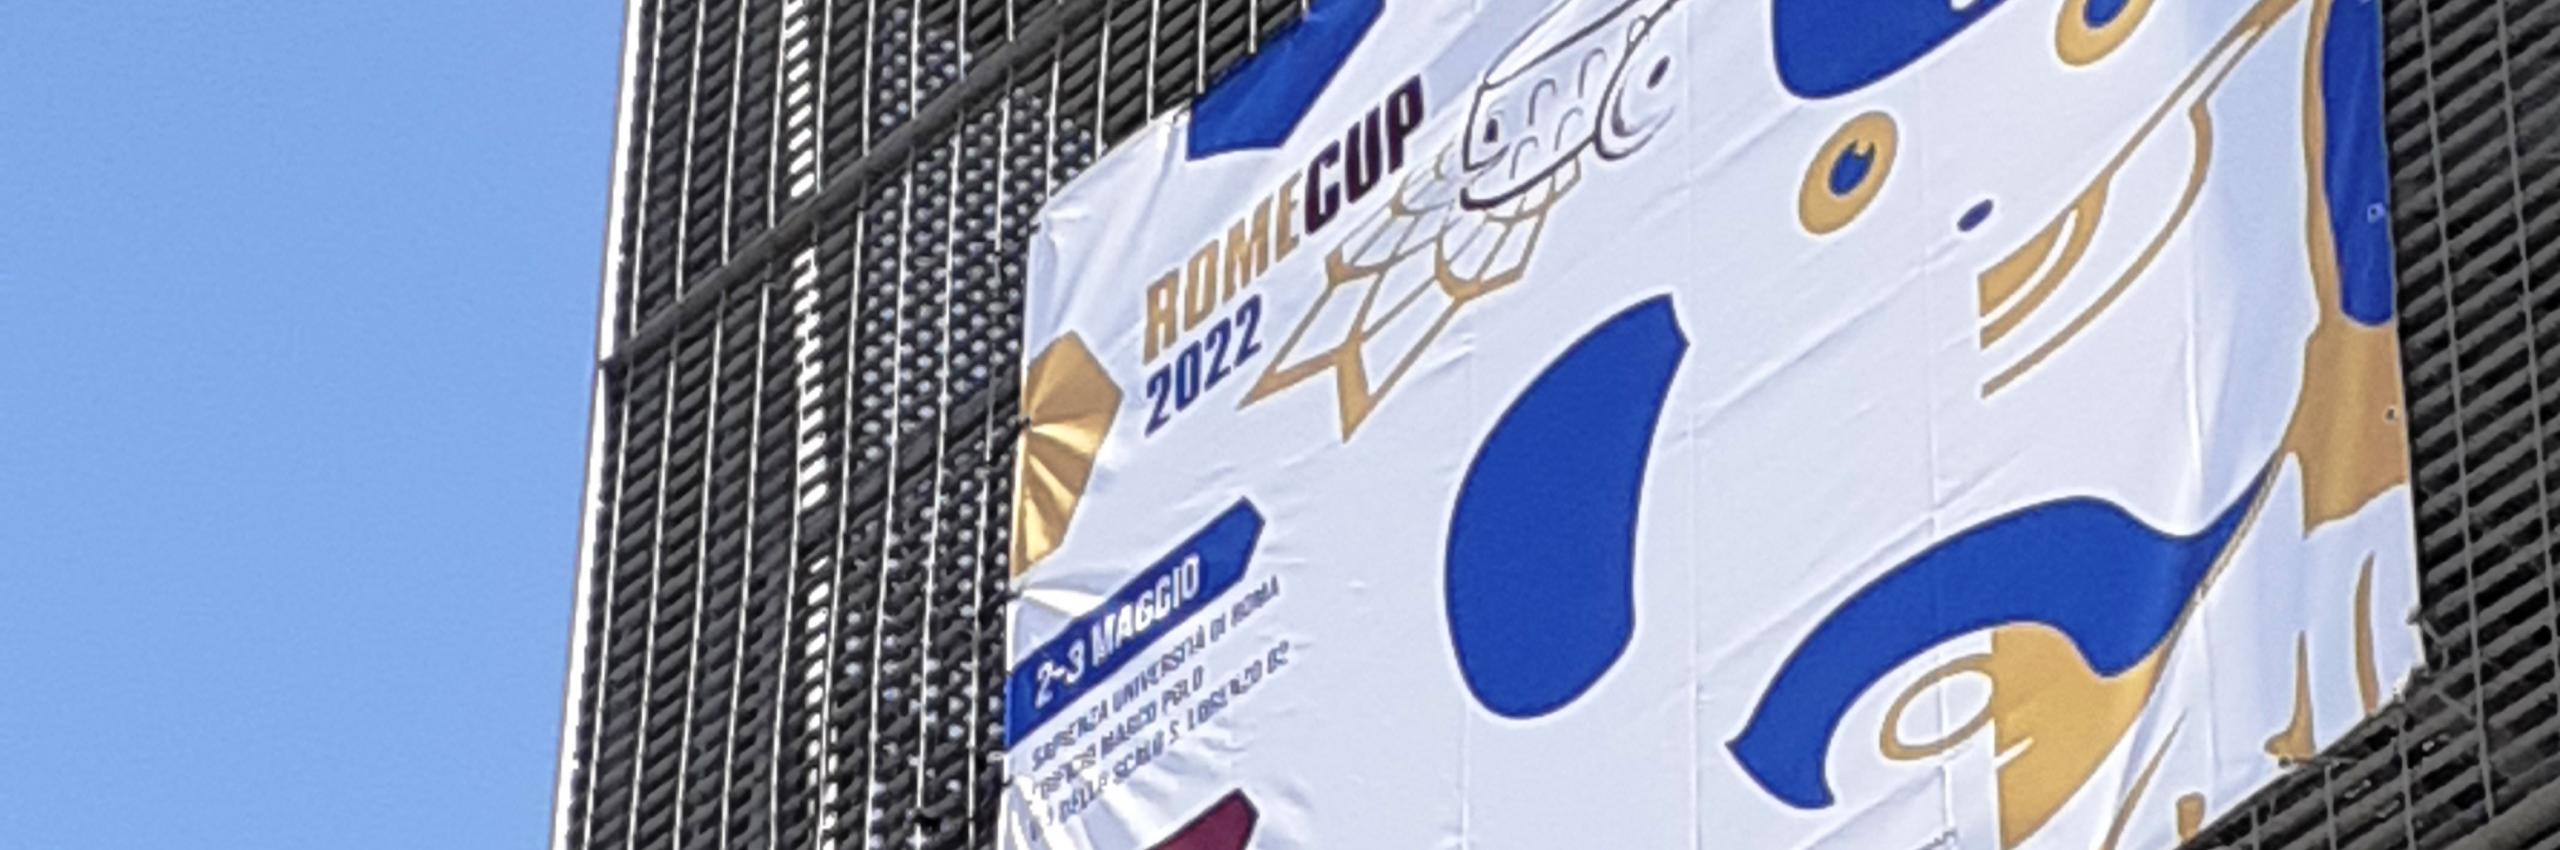 RomeCup 2022